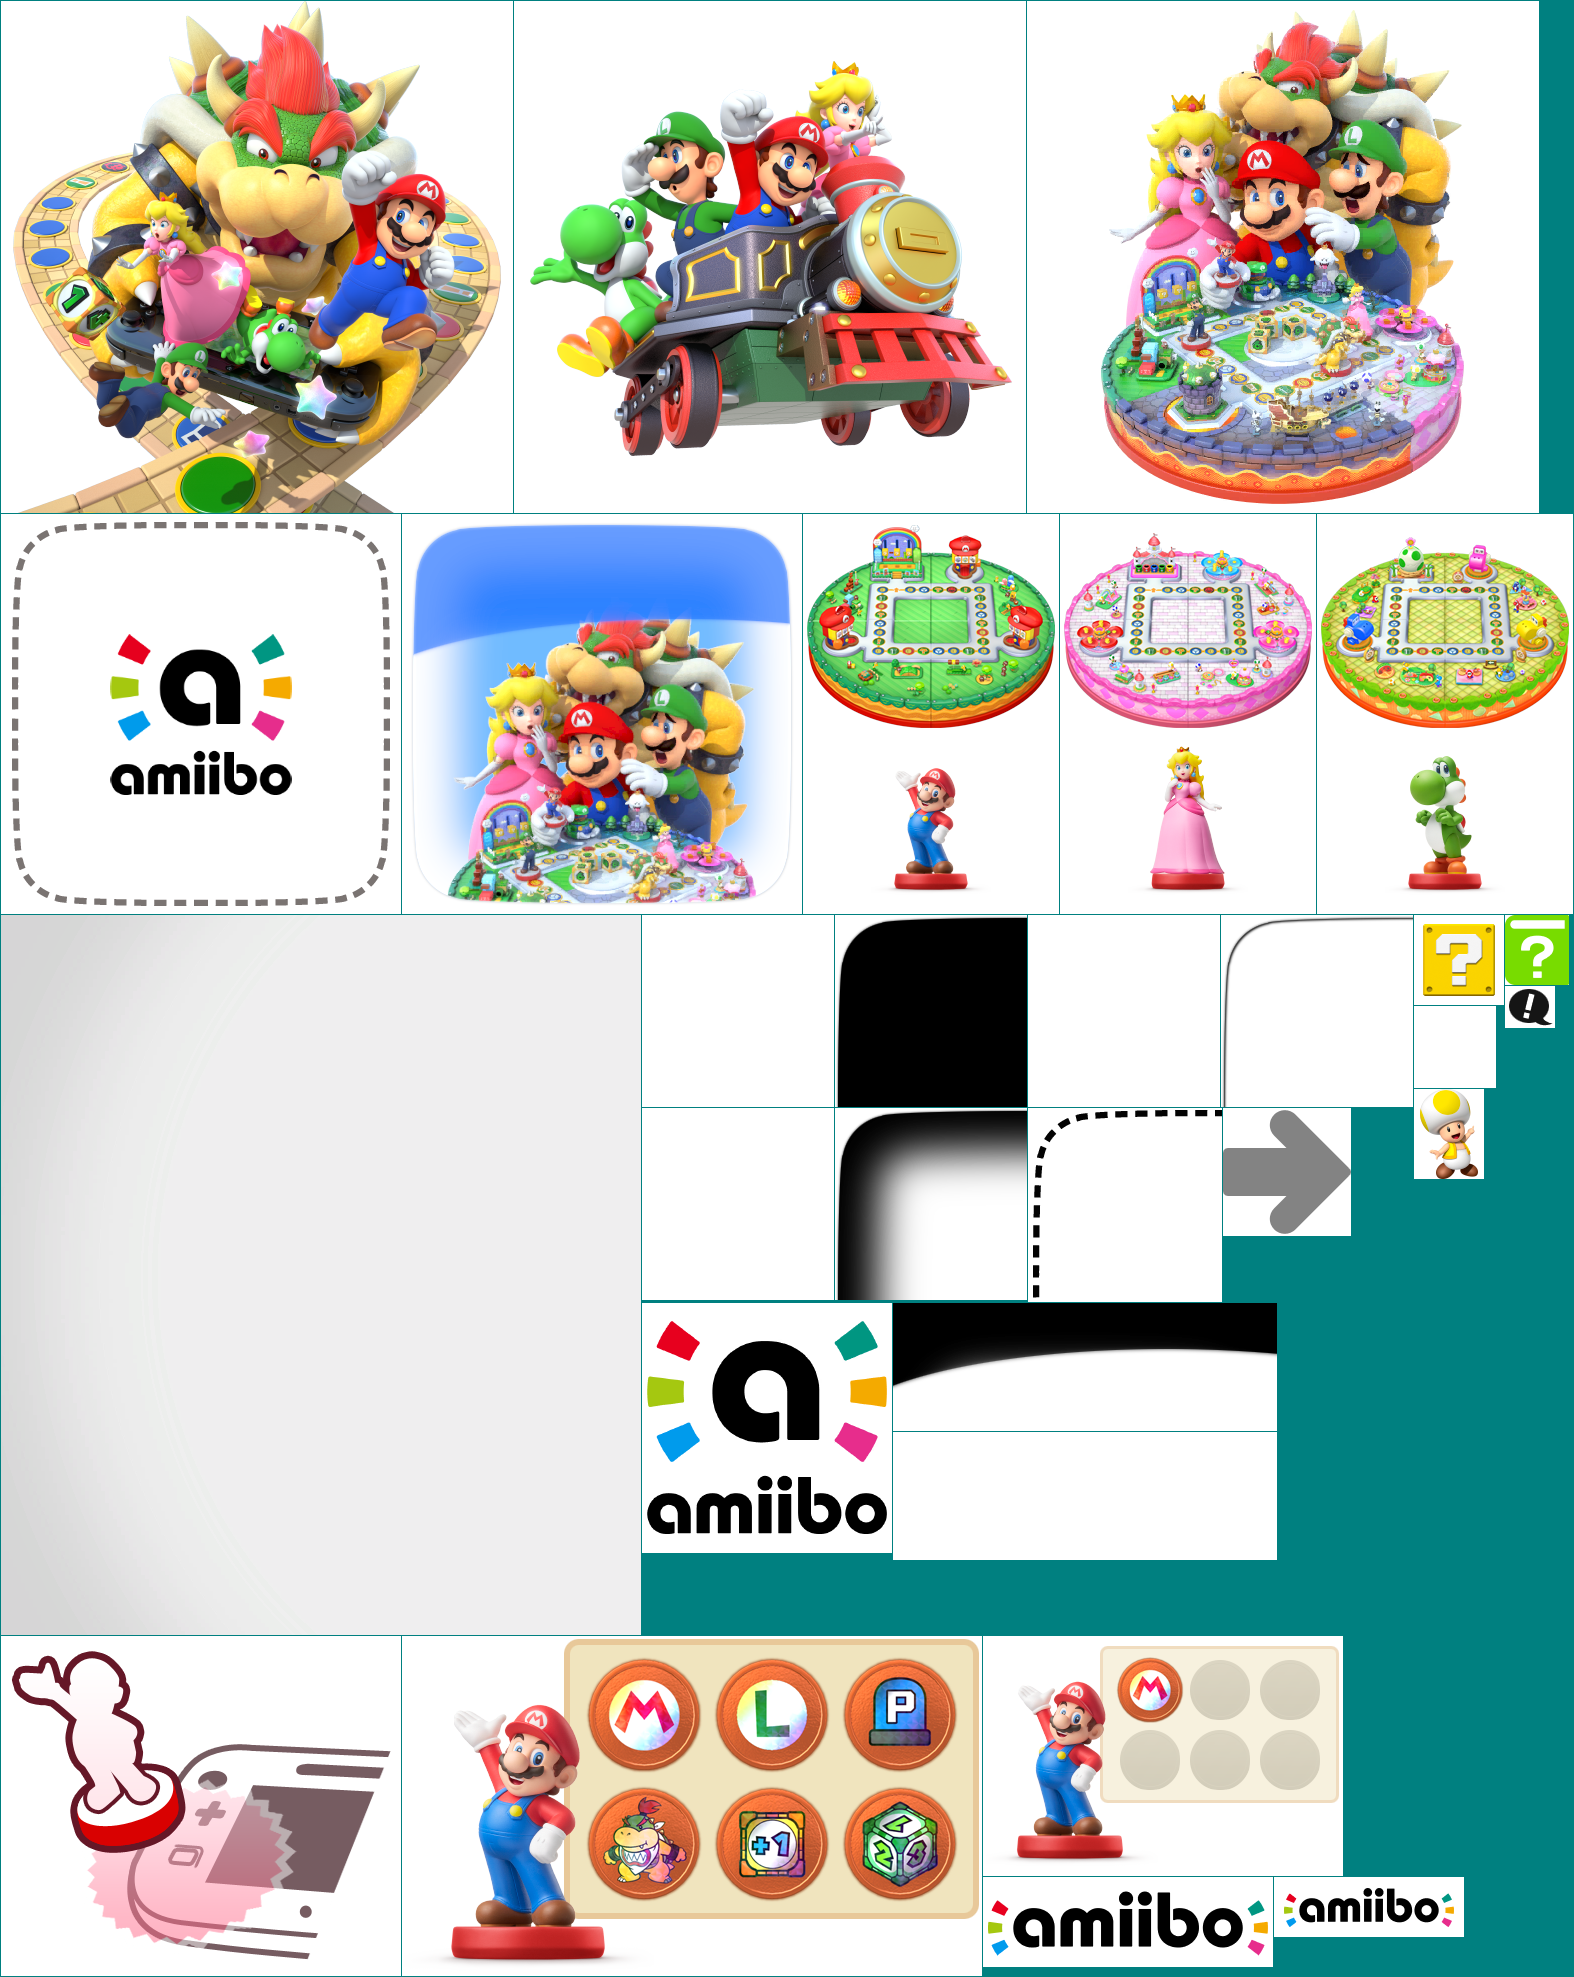 Mario Party 10 - Main Menu